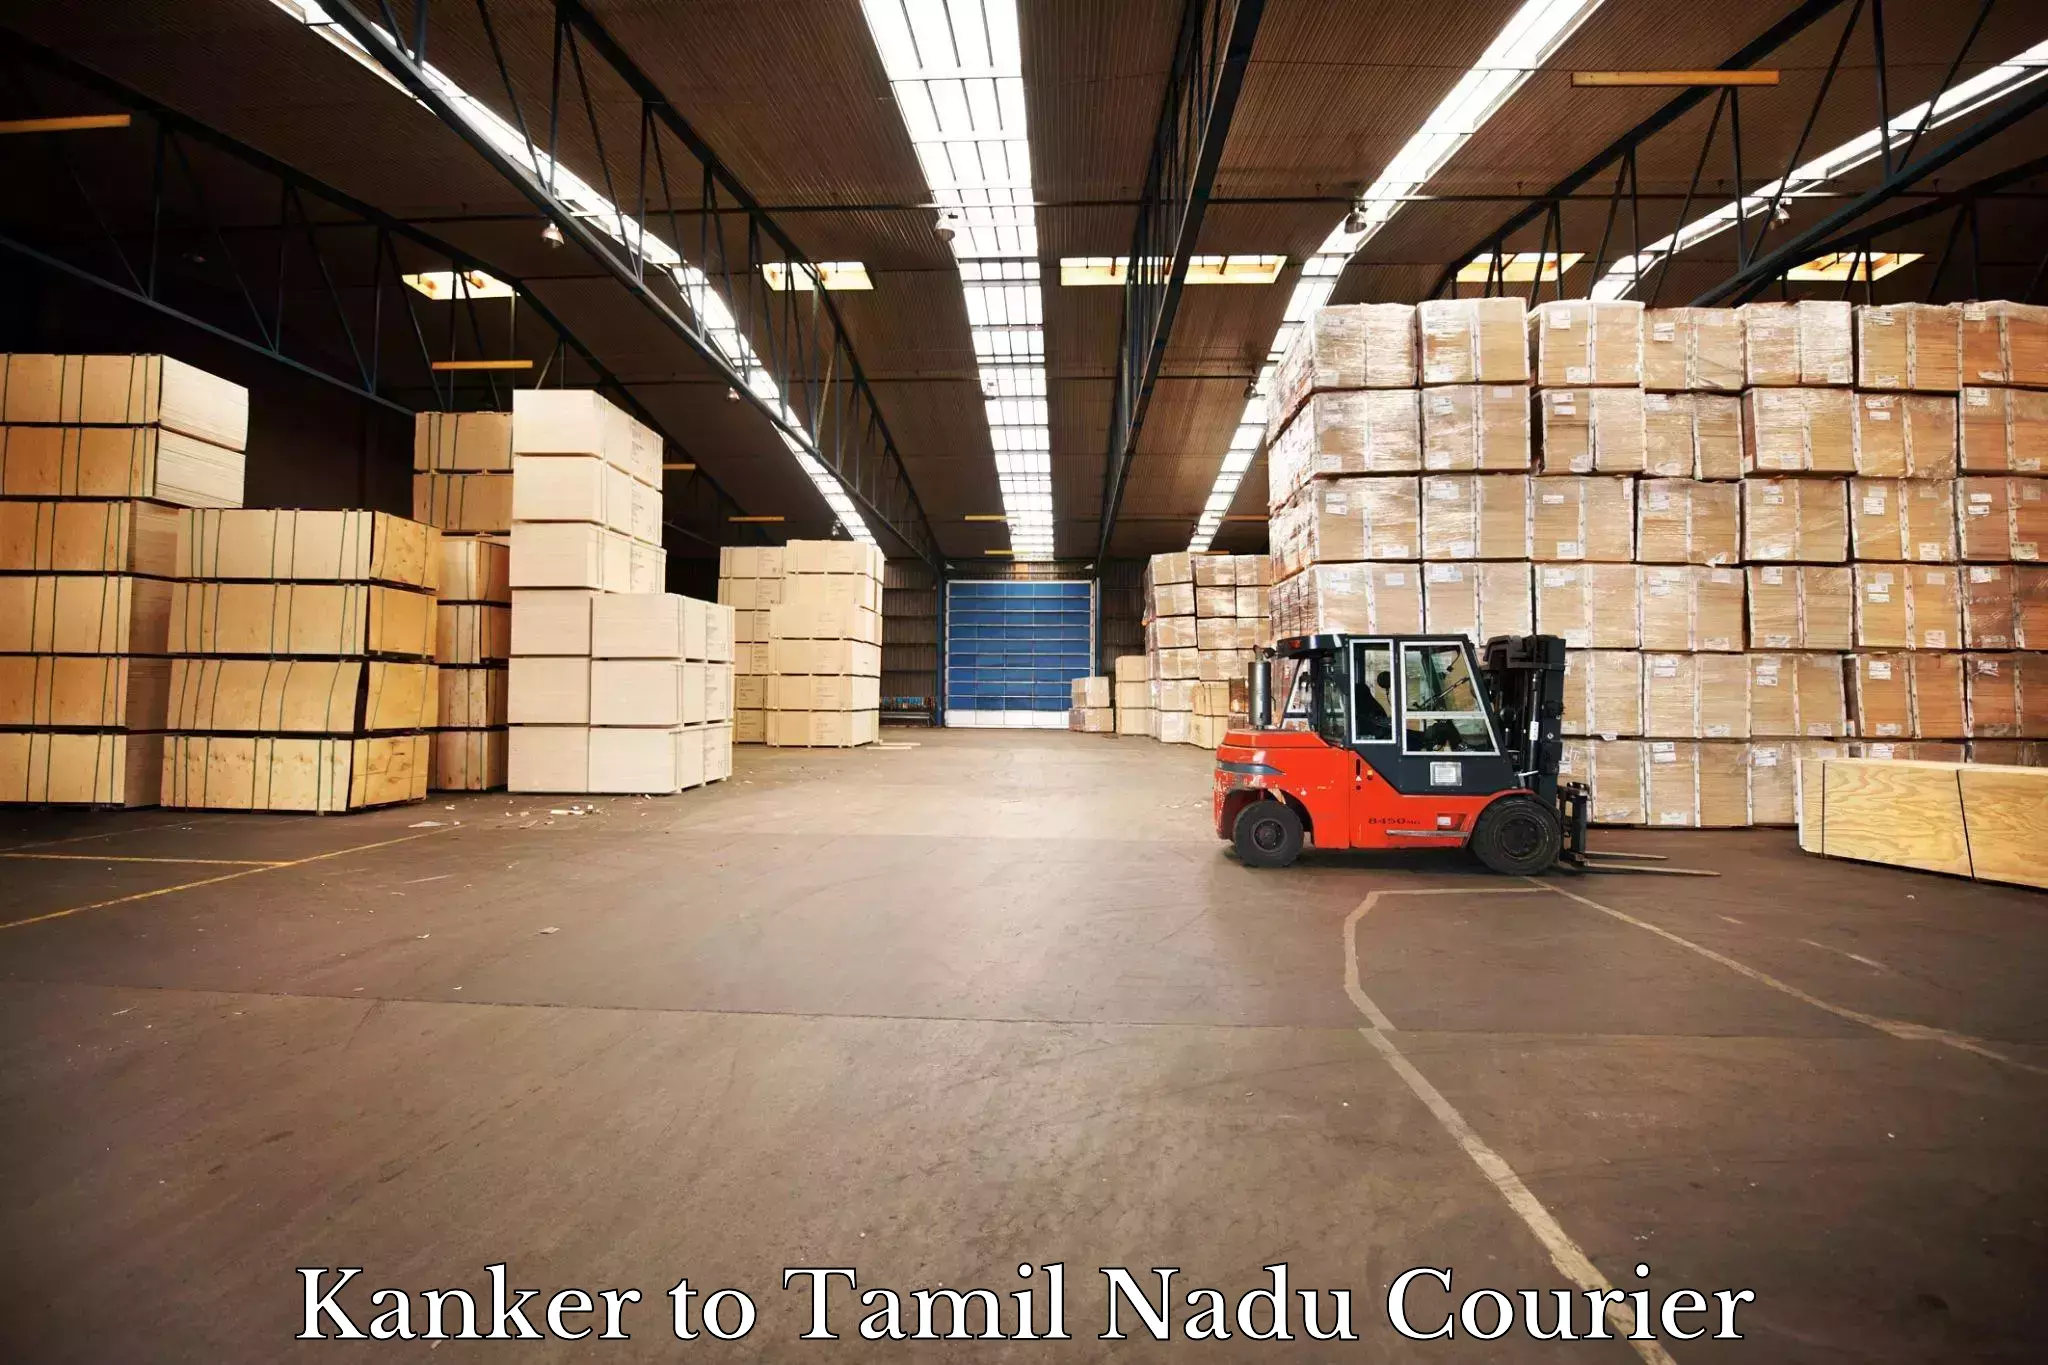 International parcel service Kanker to Thiruporur